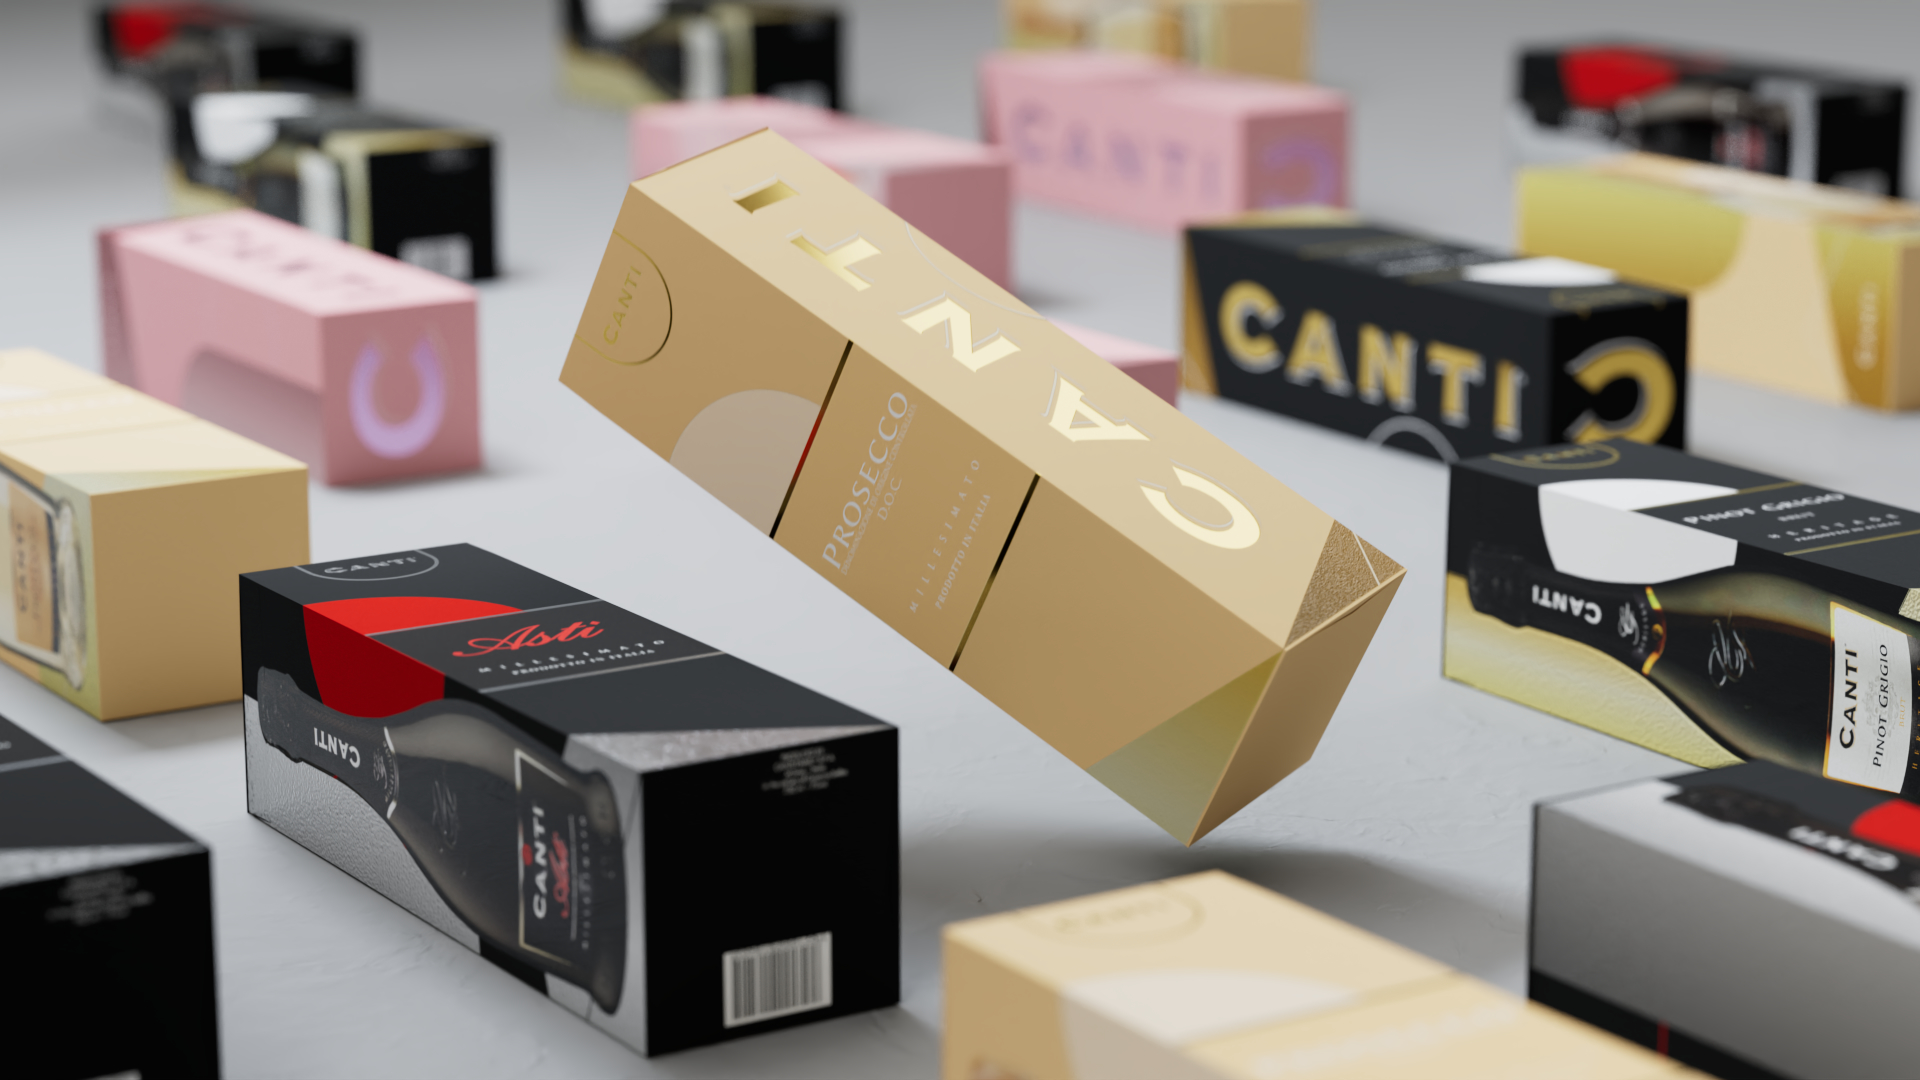 Wijnproducent Canti heeft zijn verpakkingen vernieuwd